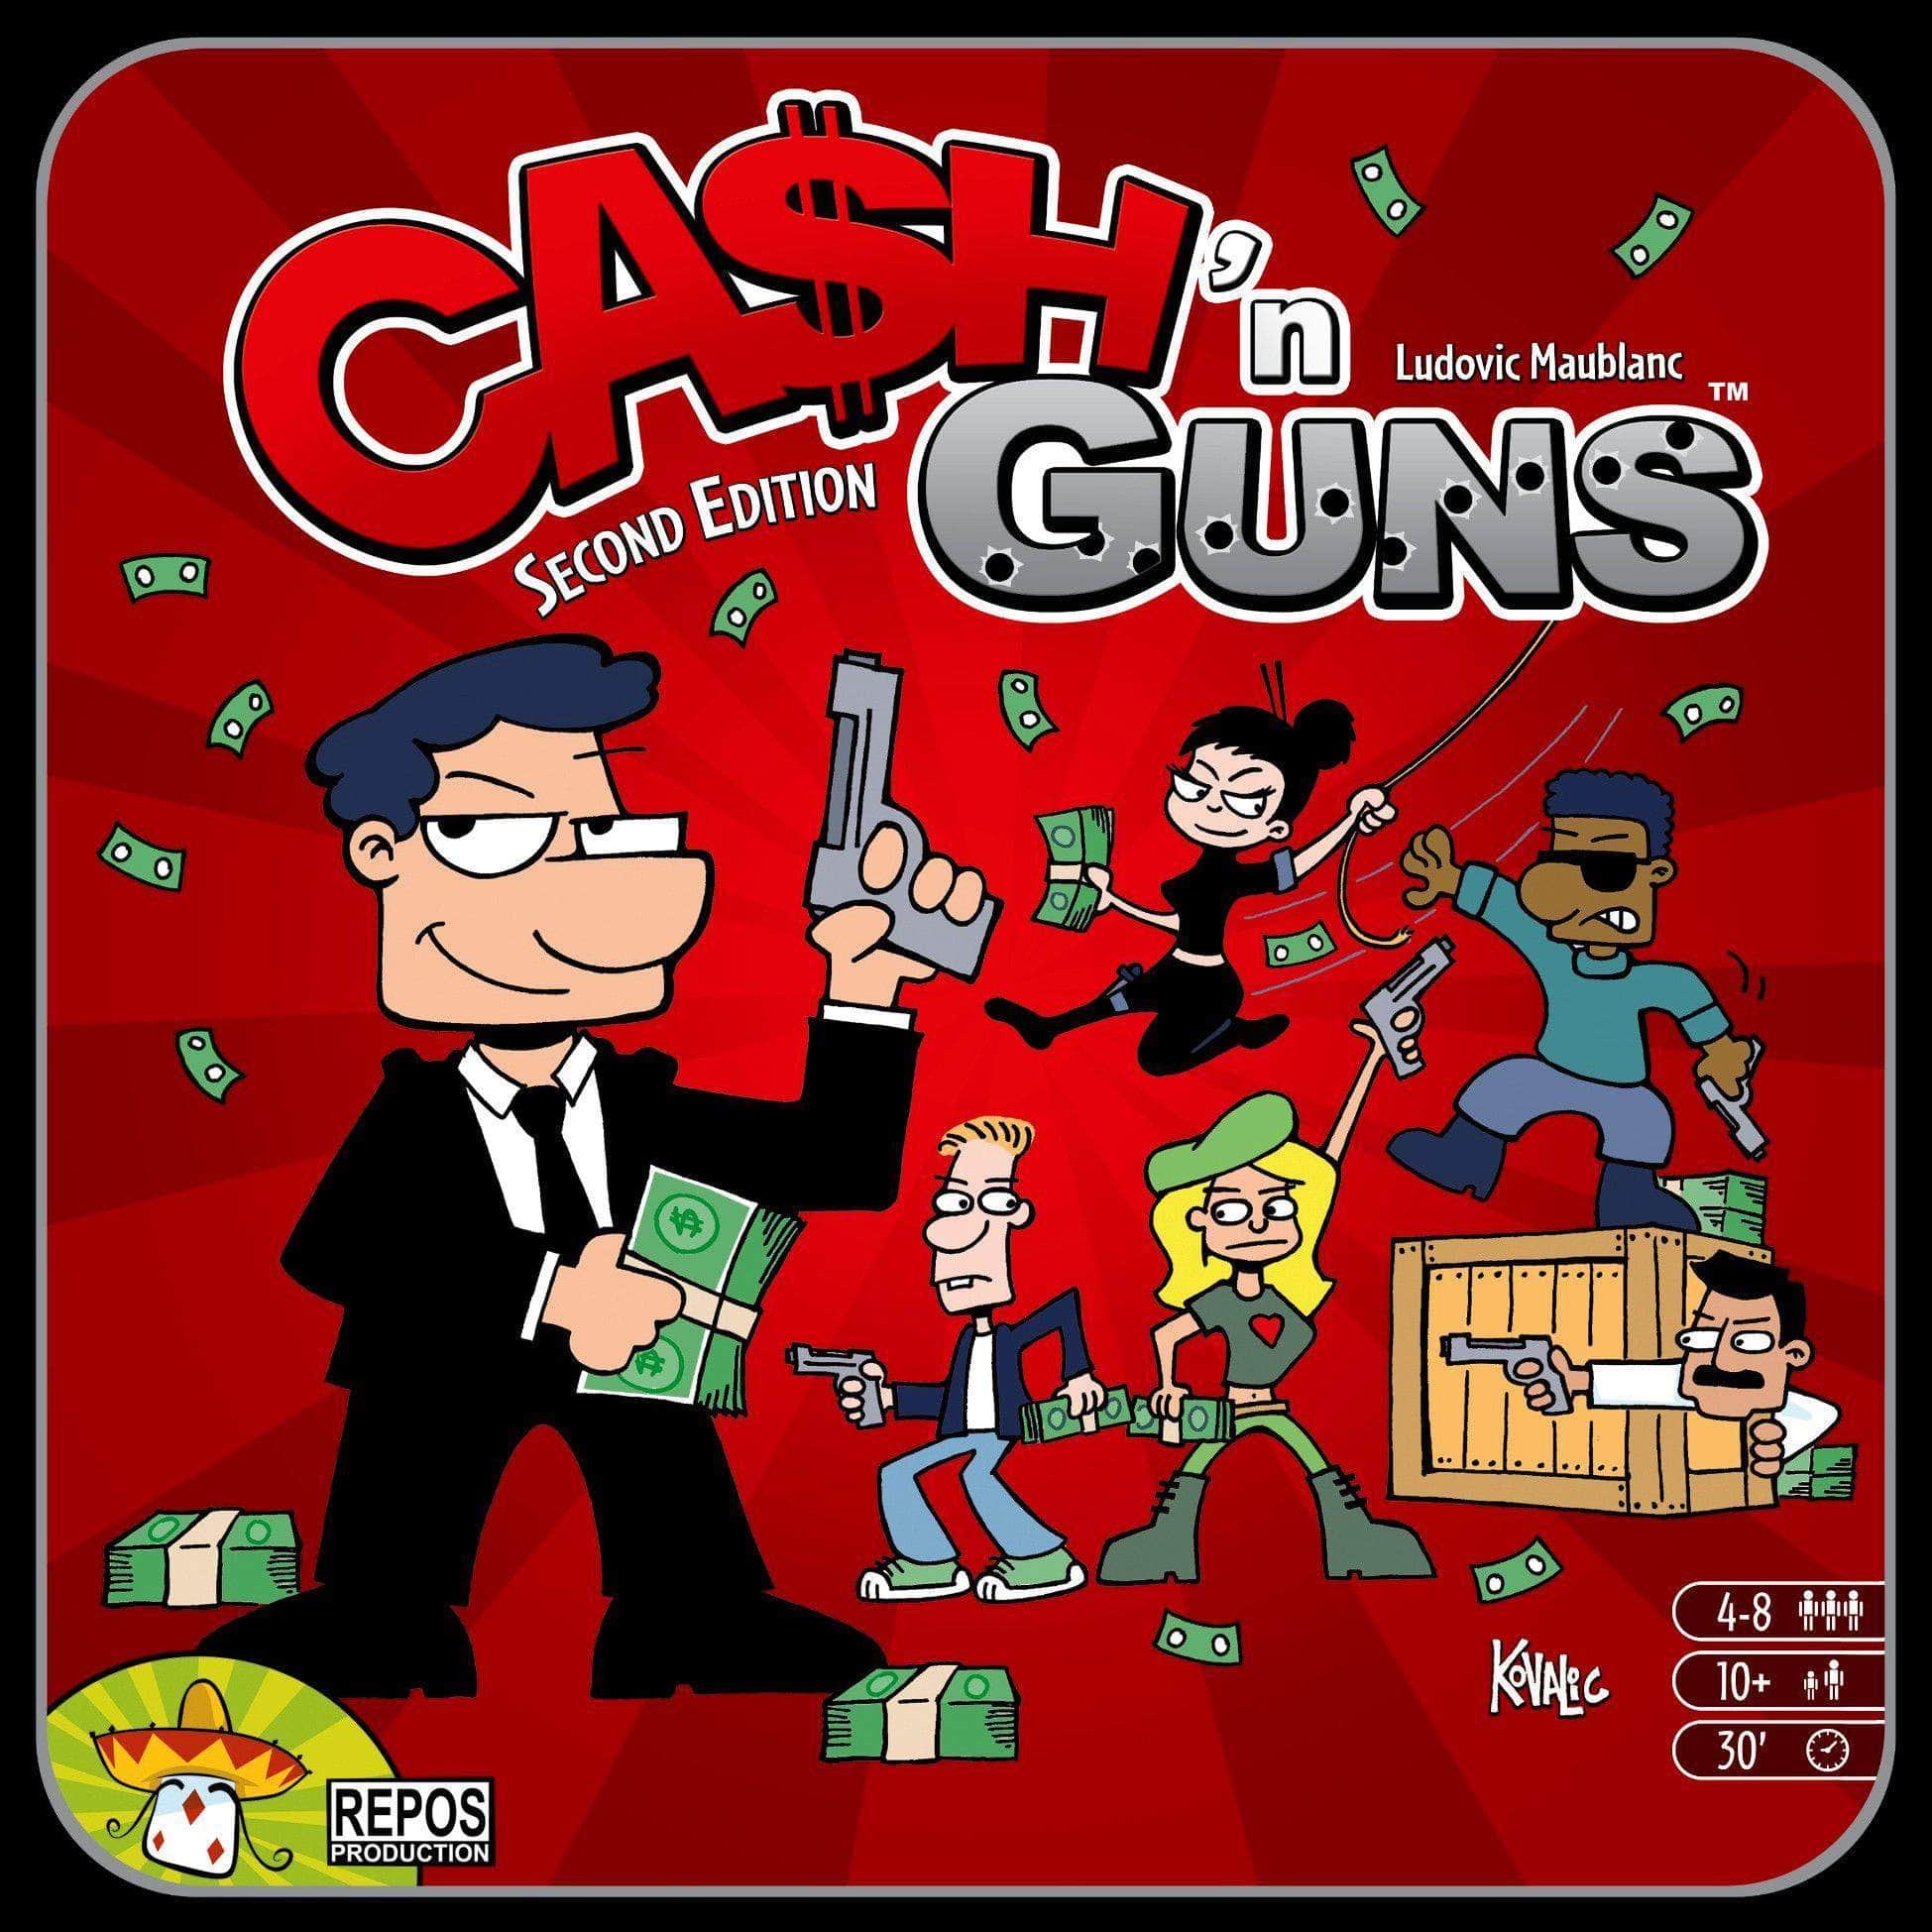 Ca $ h 'n Guns (második kiadás) (kiskereskedelmi kiadás) kiskereskedelmi társasjáték Asterion Press KS800399A